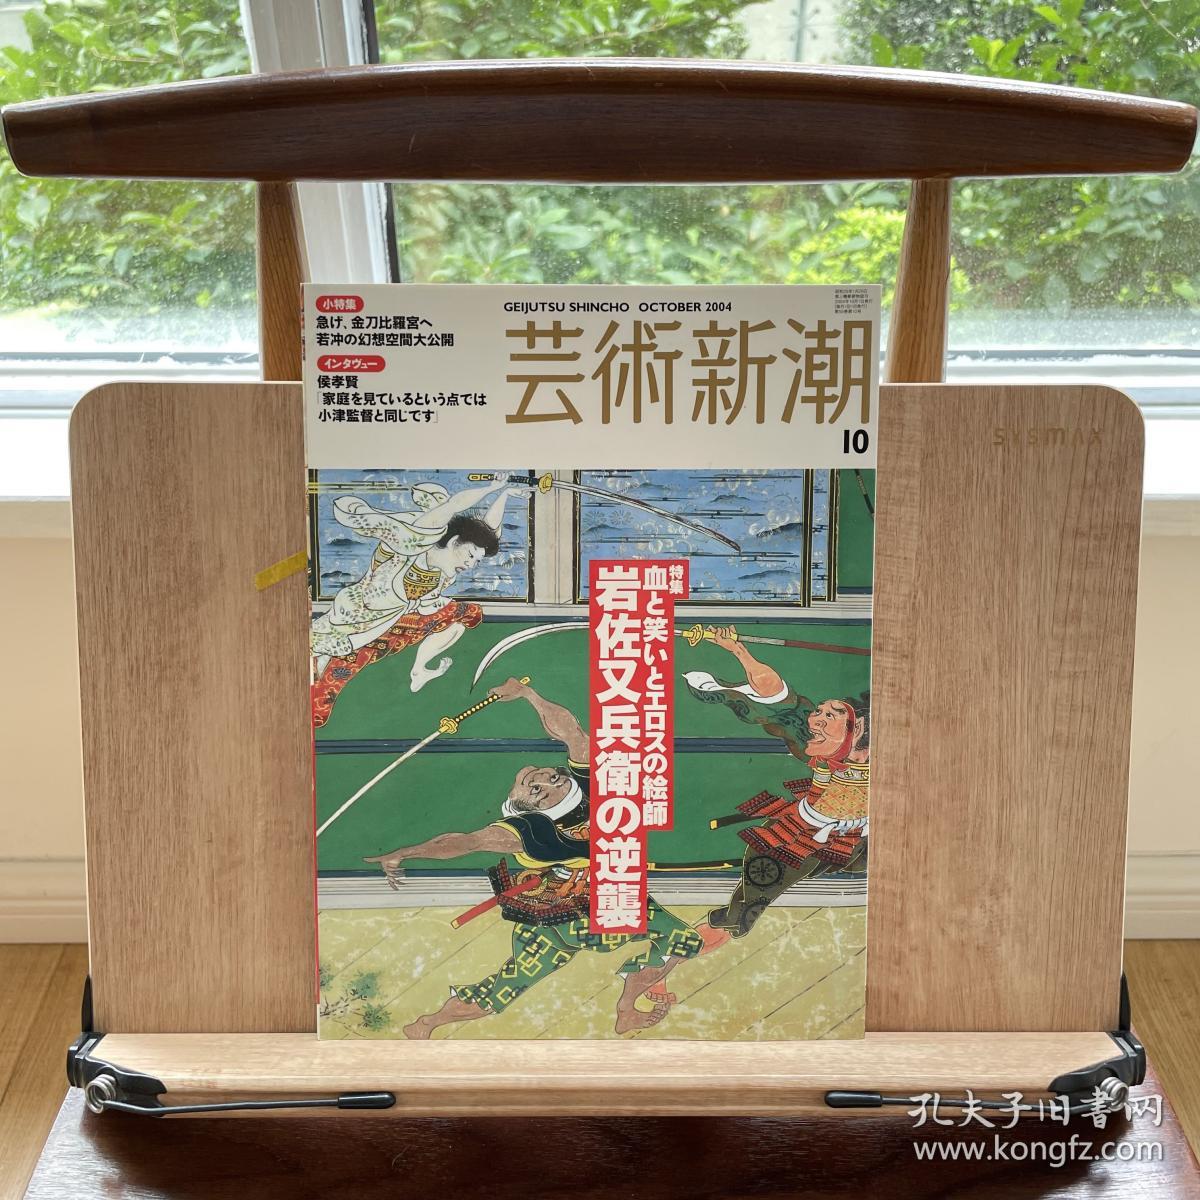 艺术新潮 岩佐右兵卫的逆袭  极其华丽的画风 日本江户时期的风俗画家，出身武士世家，其将大和绘与水墨画技法相结合，开创风俗画风，作品以历史题材为多。